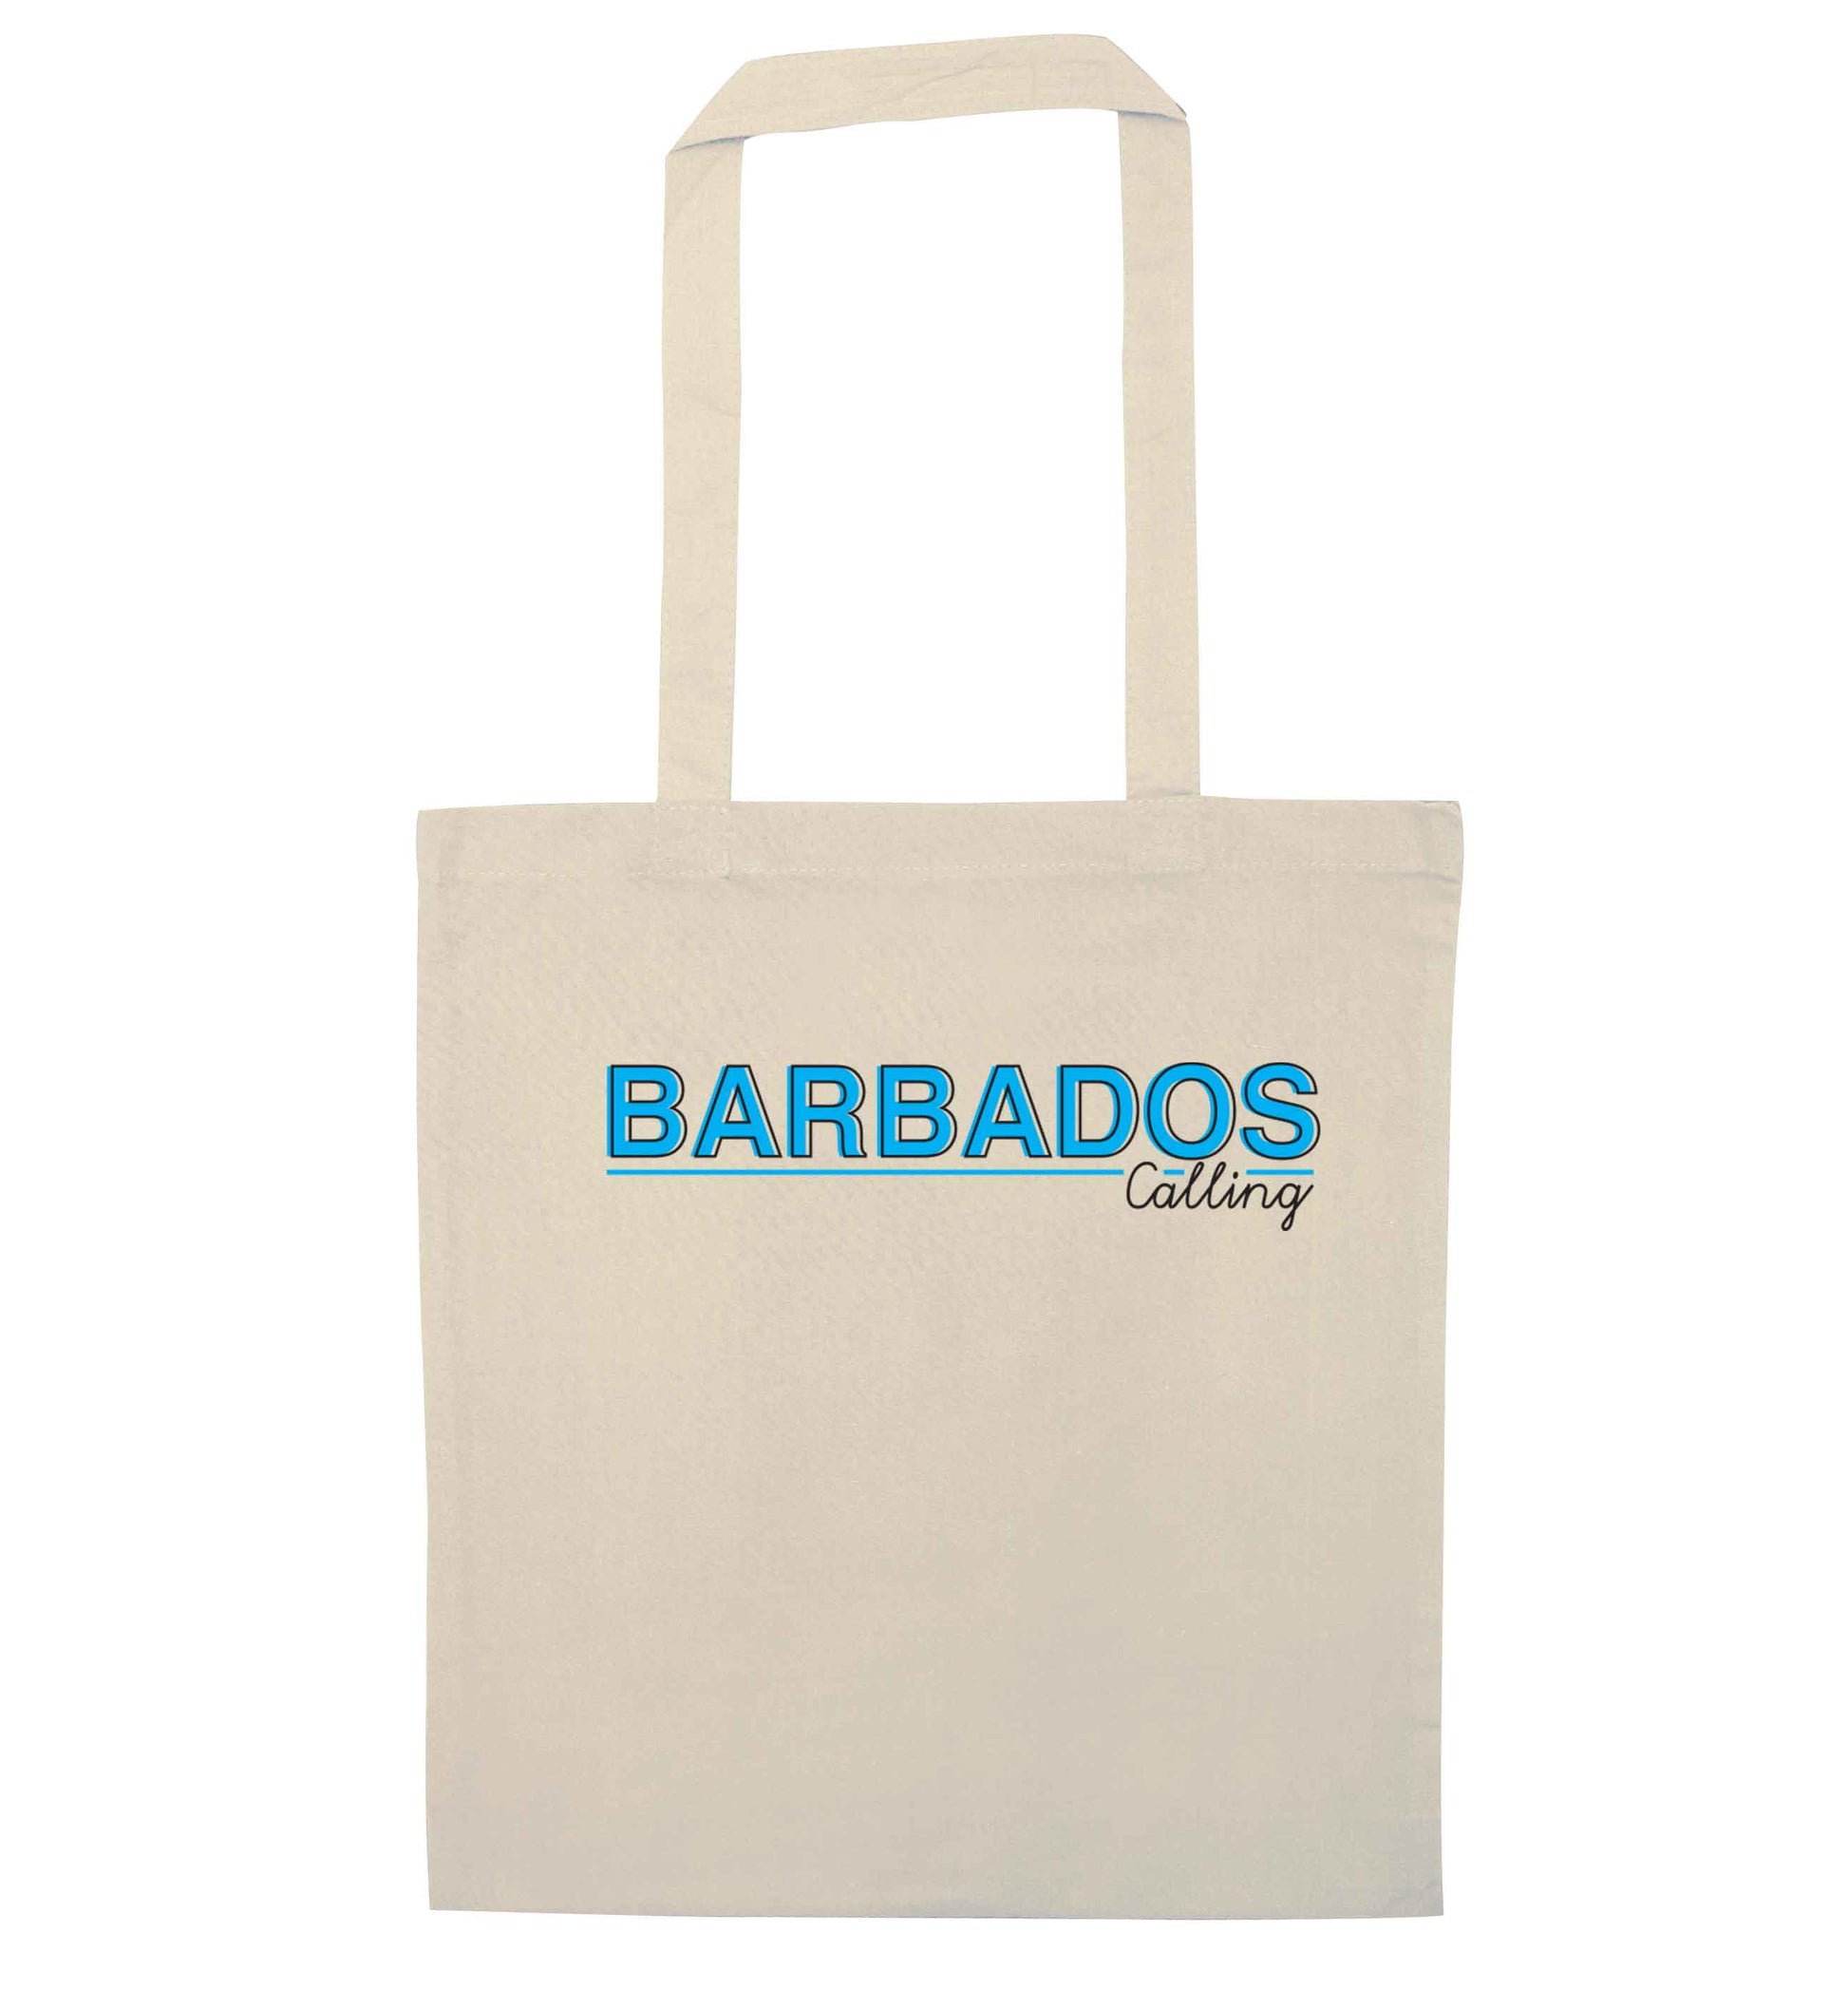 Barbados calling natural tote bag